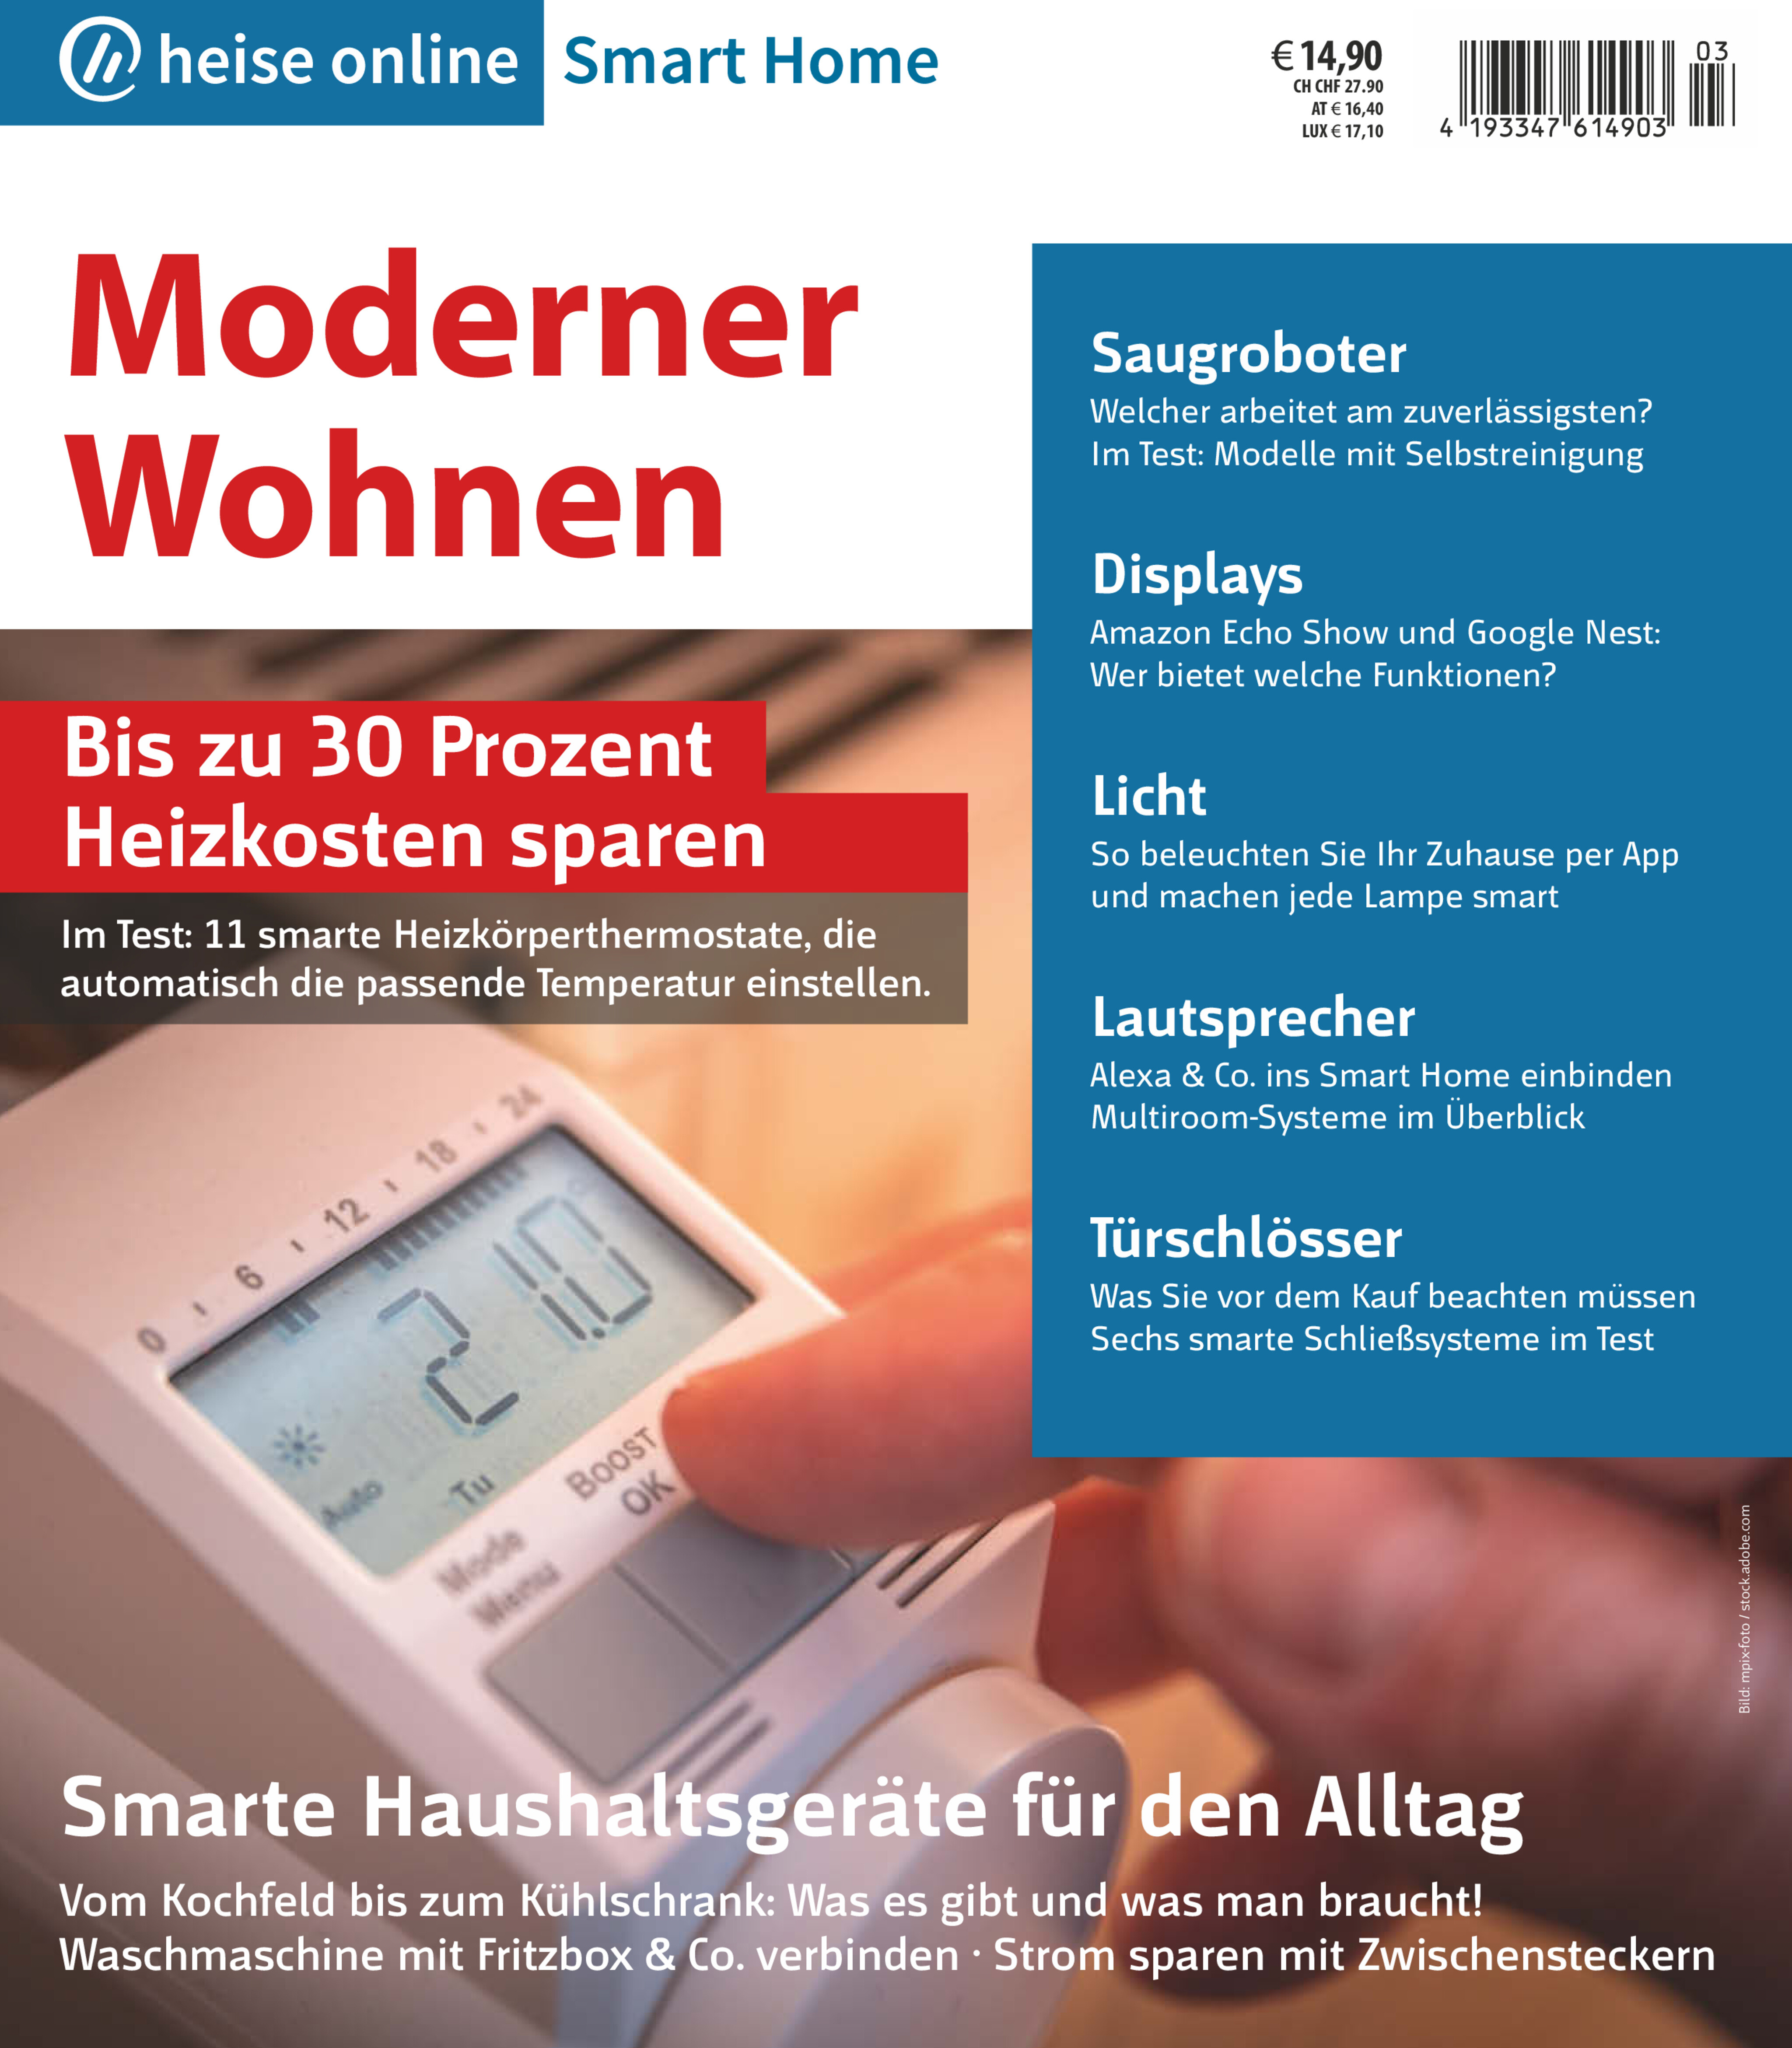 Bundle heise online Smart Home - Moderner Wohnen (Heft + PDF)